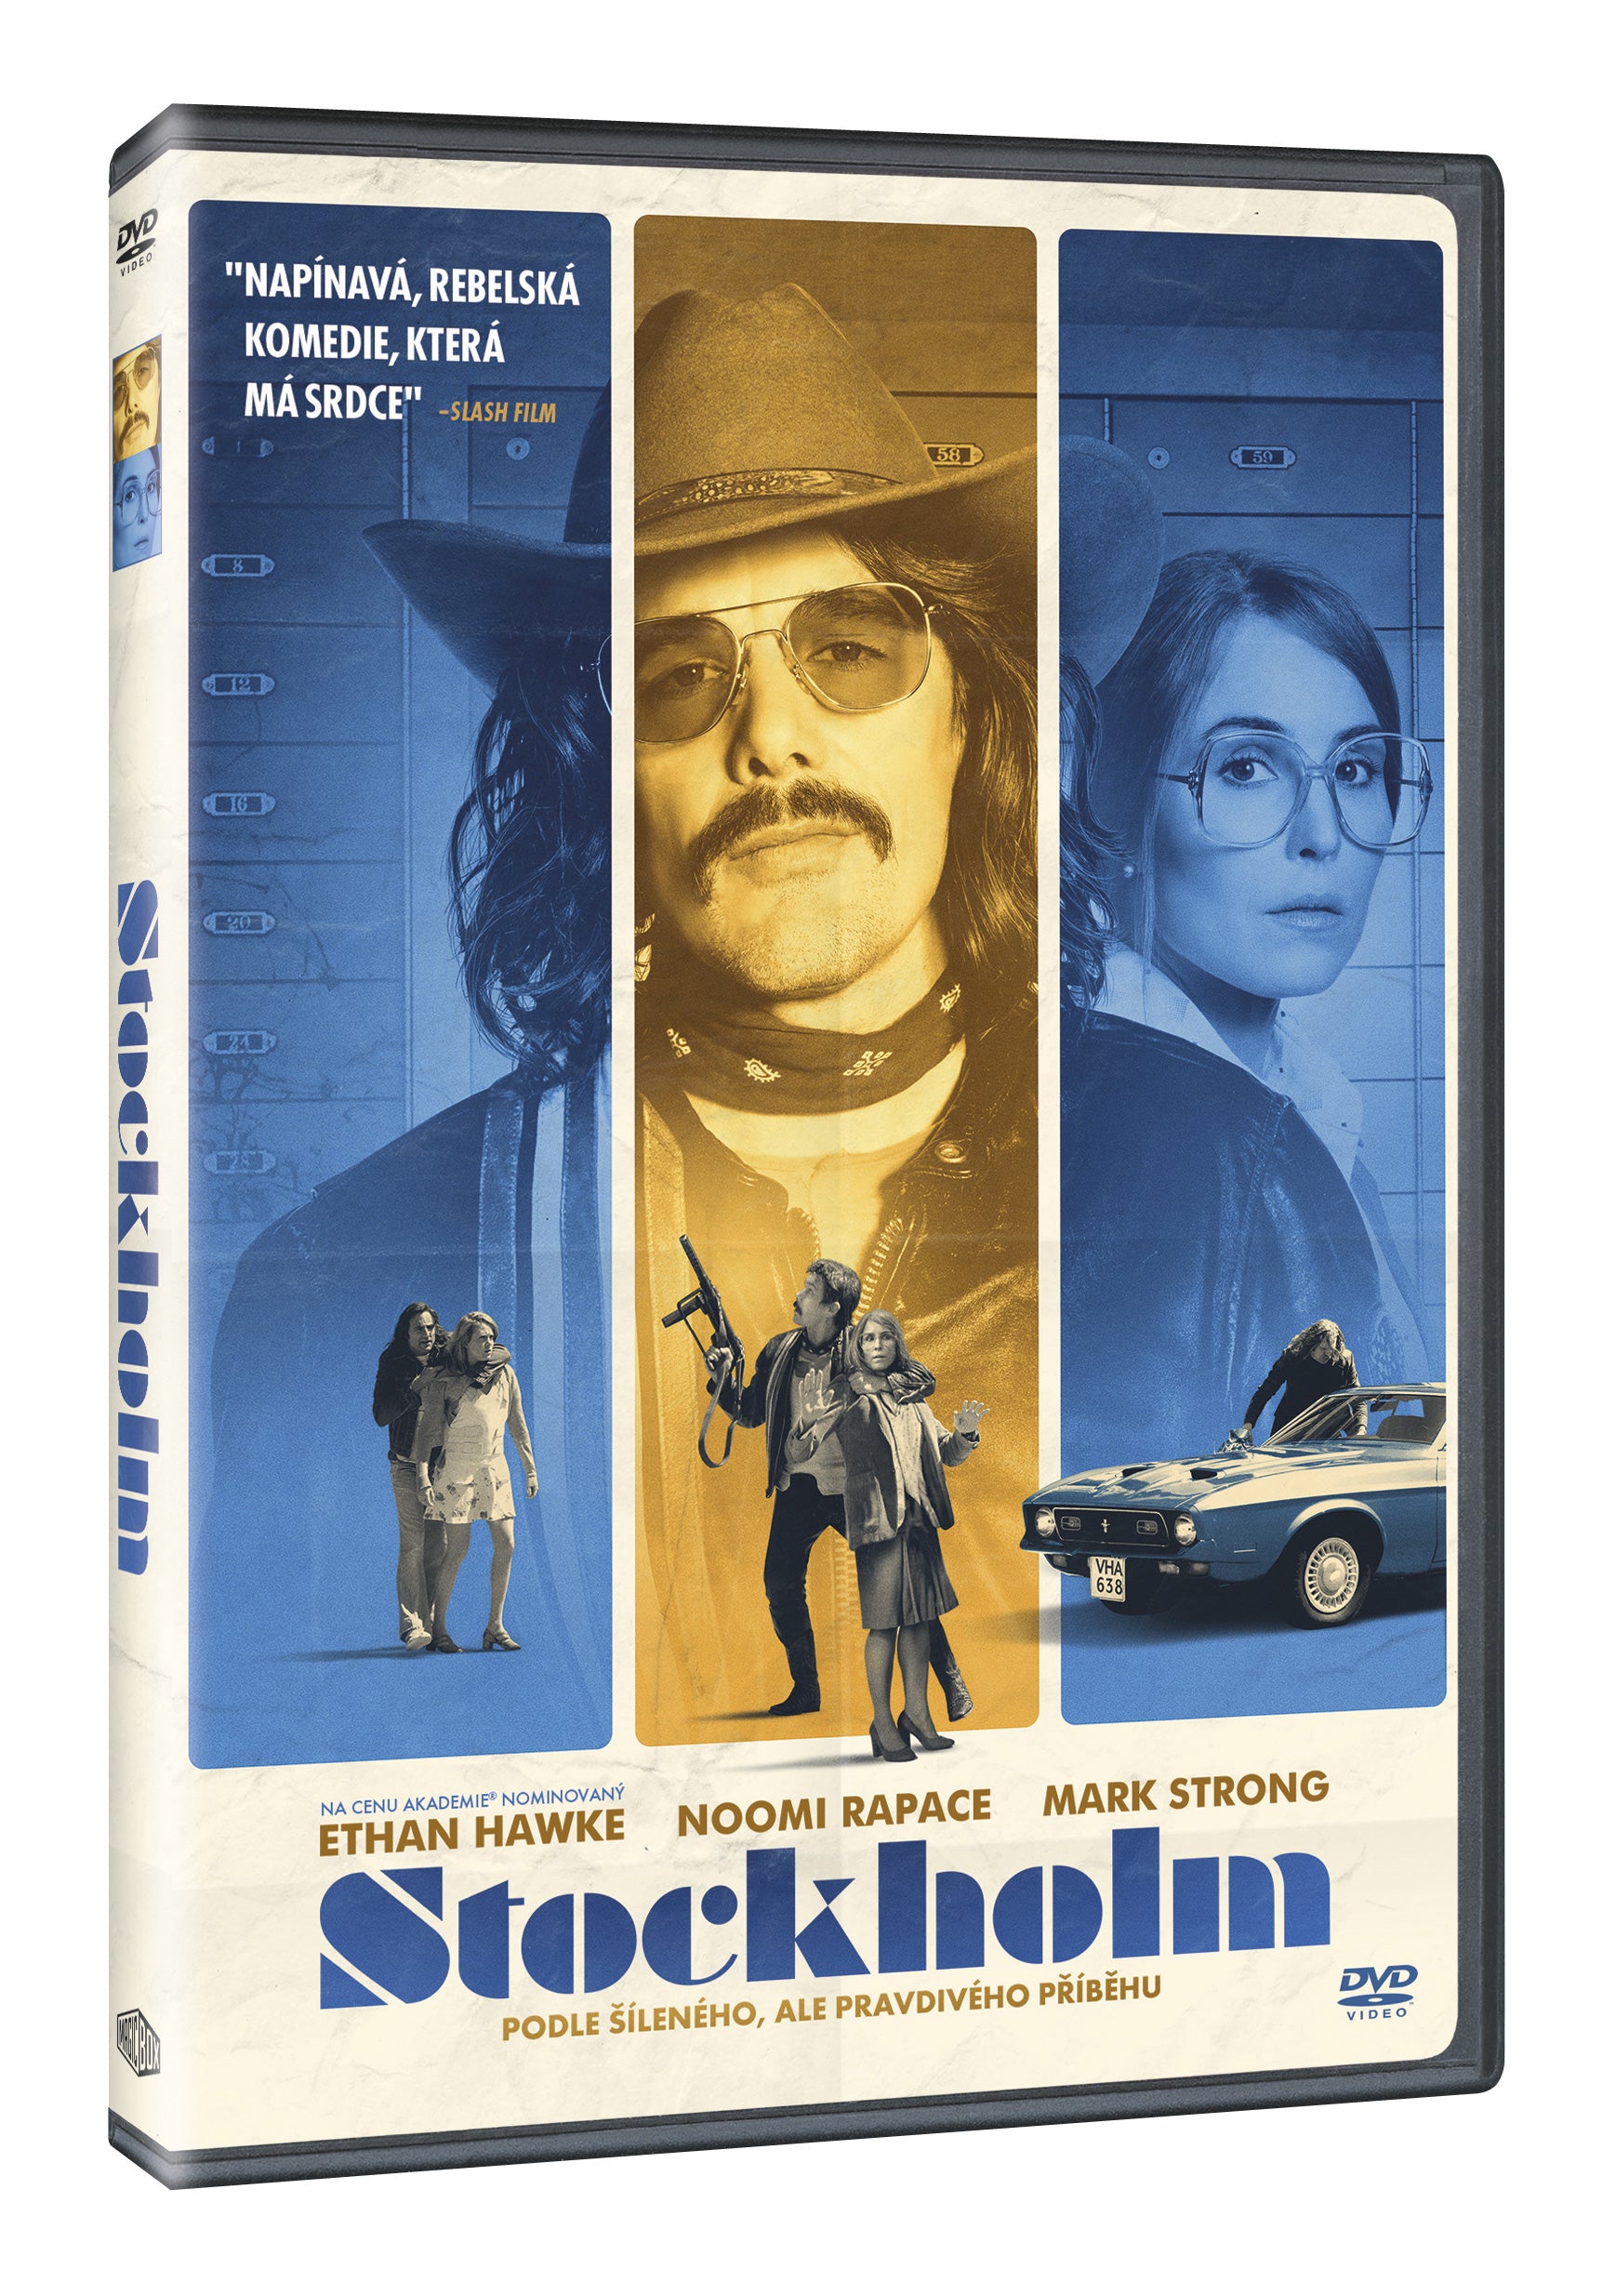 Stockholm-DVD / Stockholm